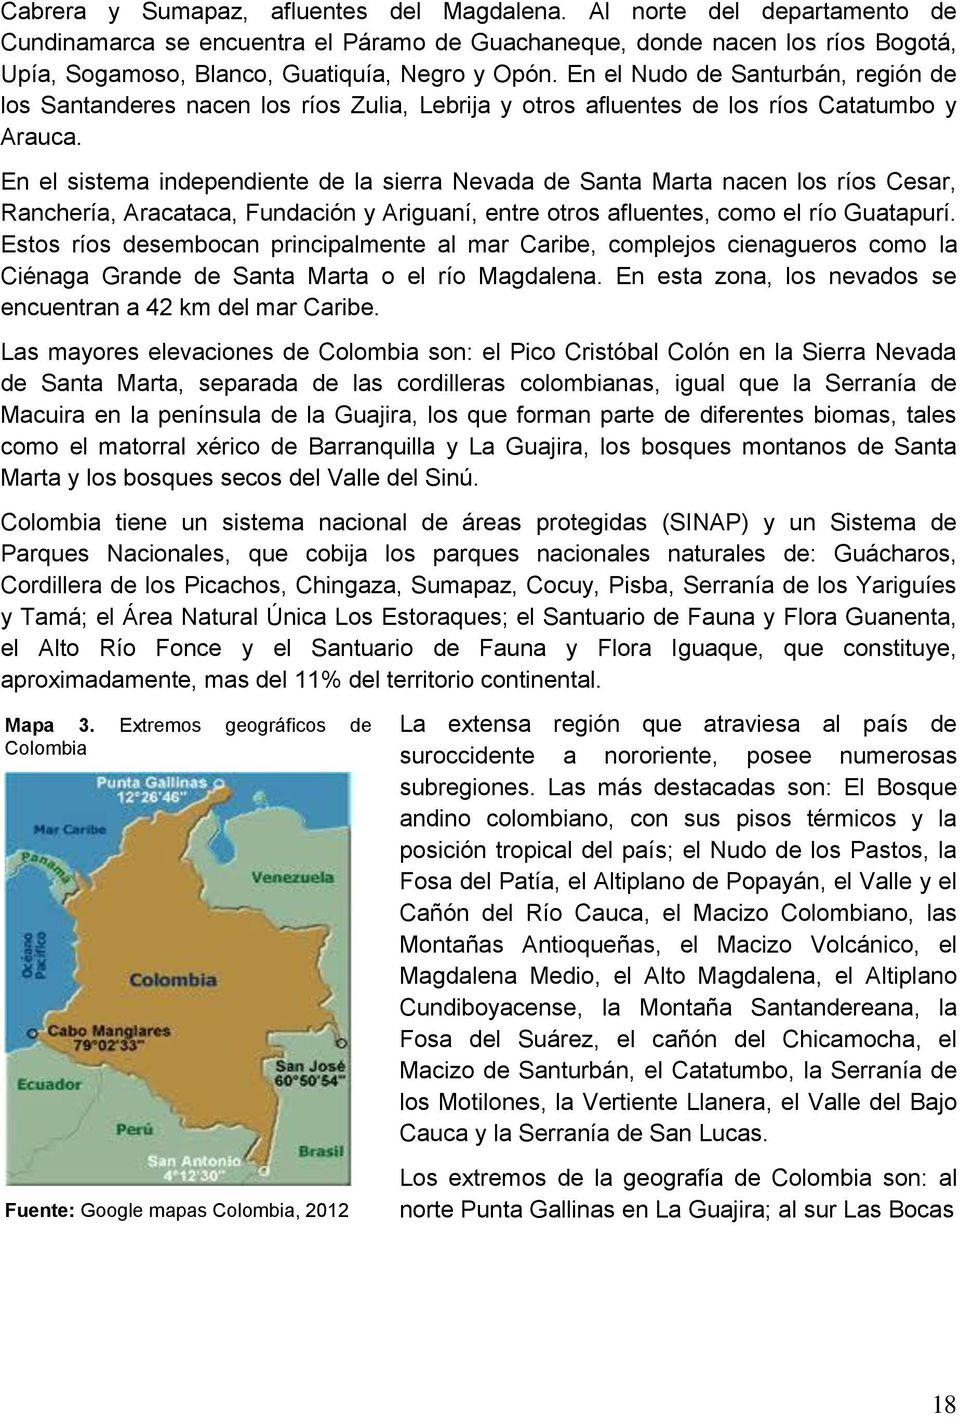 En el Nudo de Santurbán, región de los Santanderes nacen los ríos Zulia, Lebrija y otros afluentes de los ríos Catatumbo y Arauca.